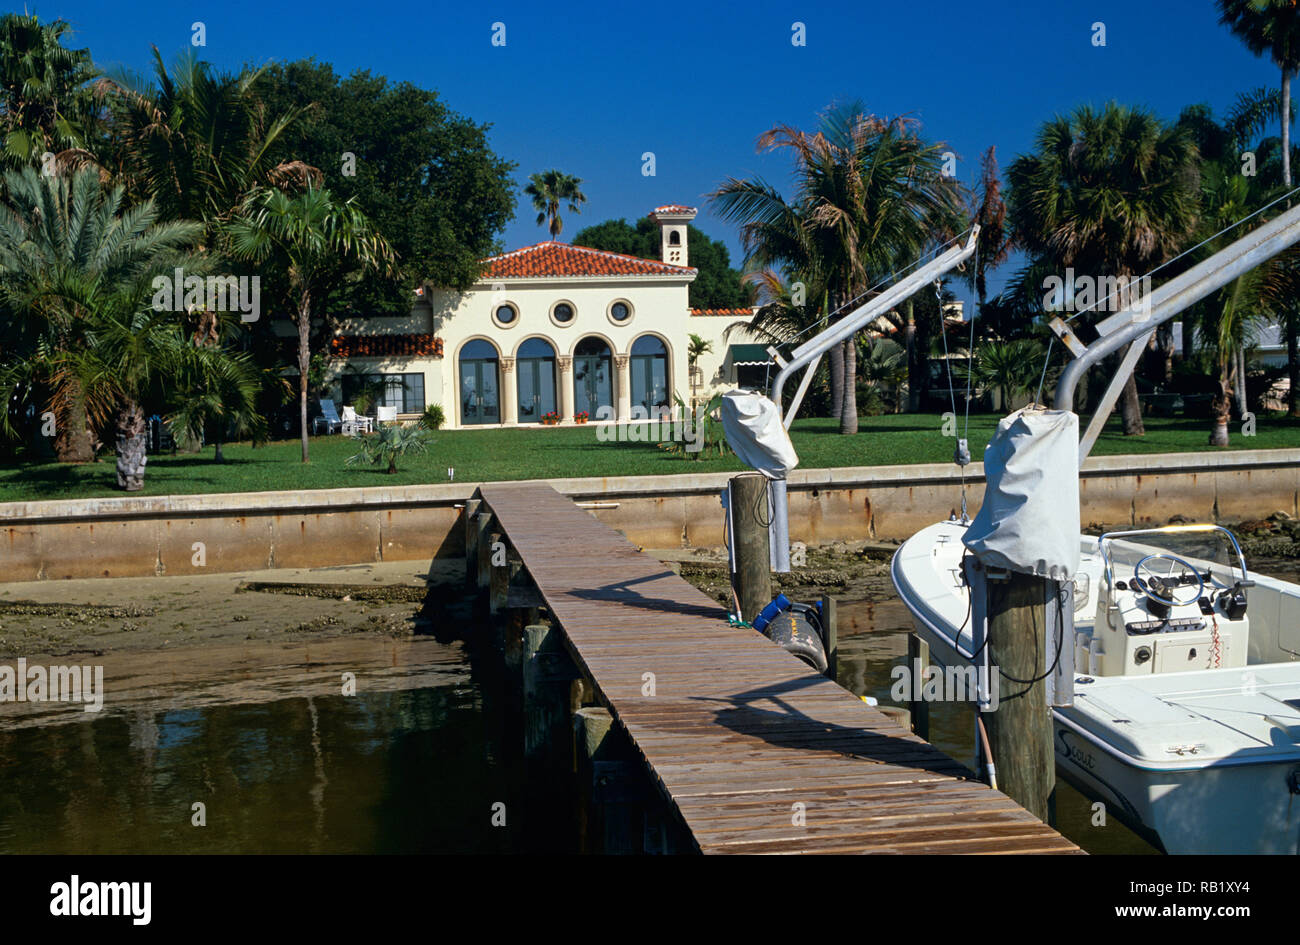 Accueil Résidentiel de luxe avec quai privé à St Petersburg, Floride, USA Banque D'Images